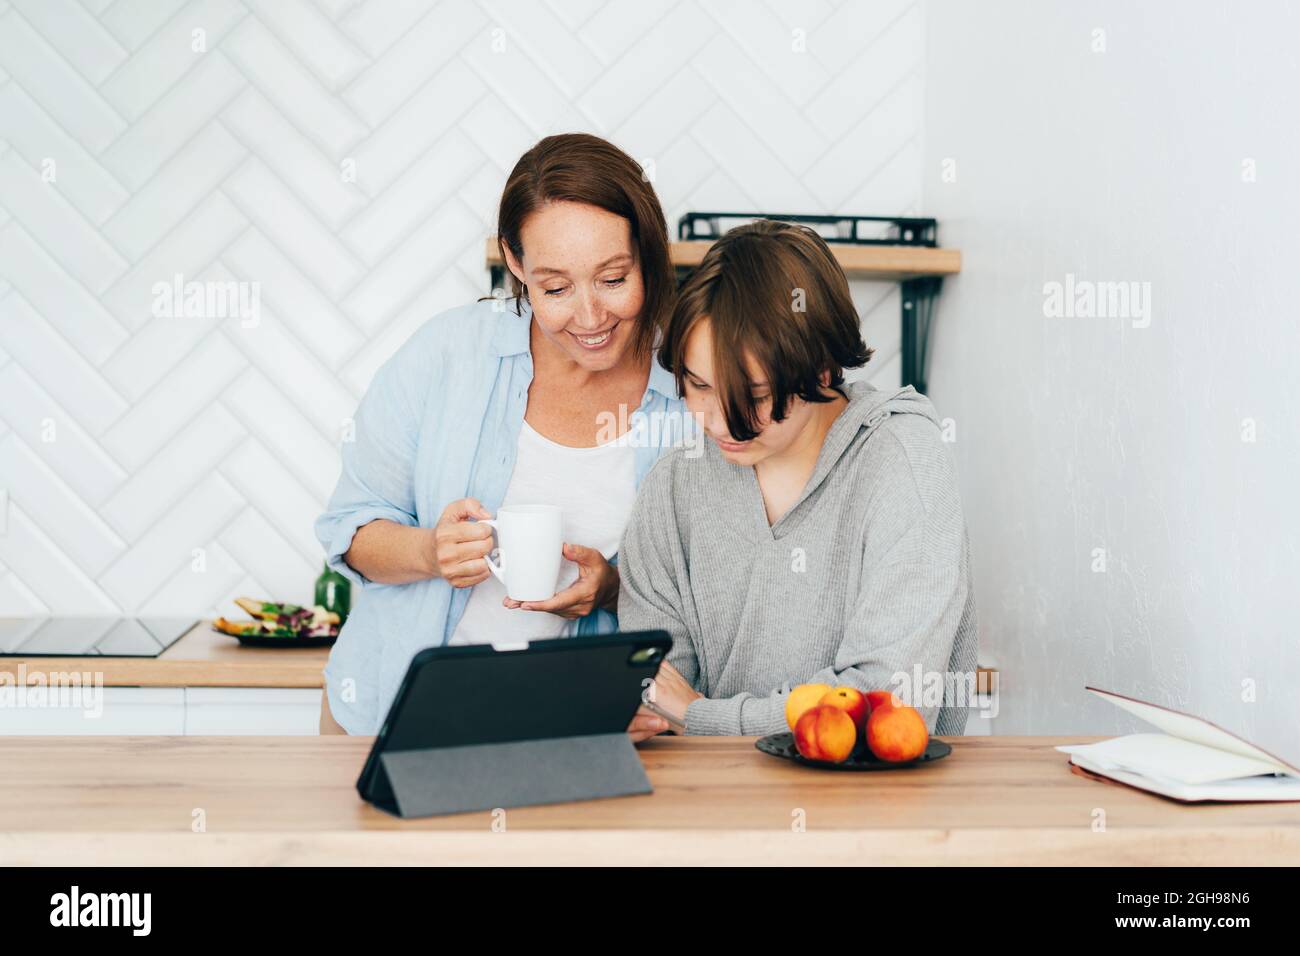 Mutter und Tochter im Teenageralter in der Küche beobachten ein soziales Netzwerk am Telefon und haben Spaß. Stockfoto